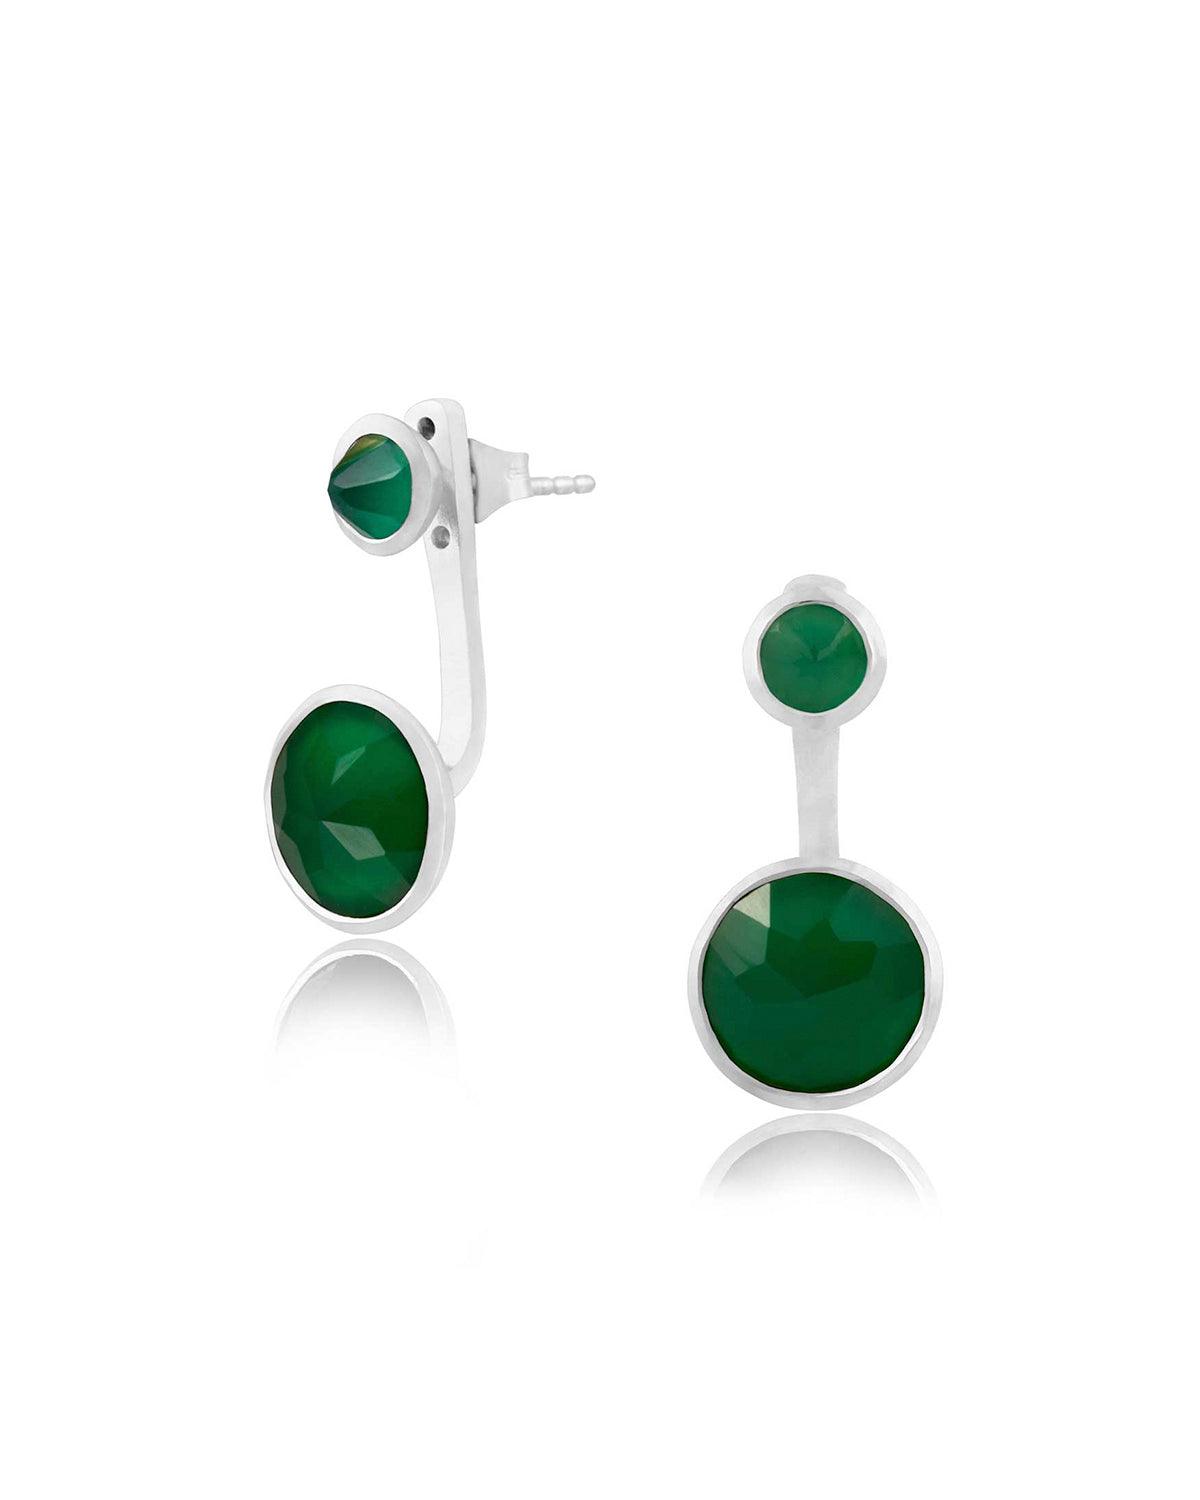 Indi Green Onyx Twin Gem Silver Earrings - Moon London